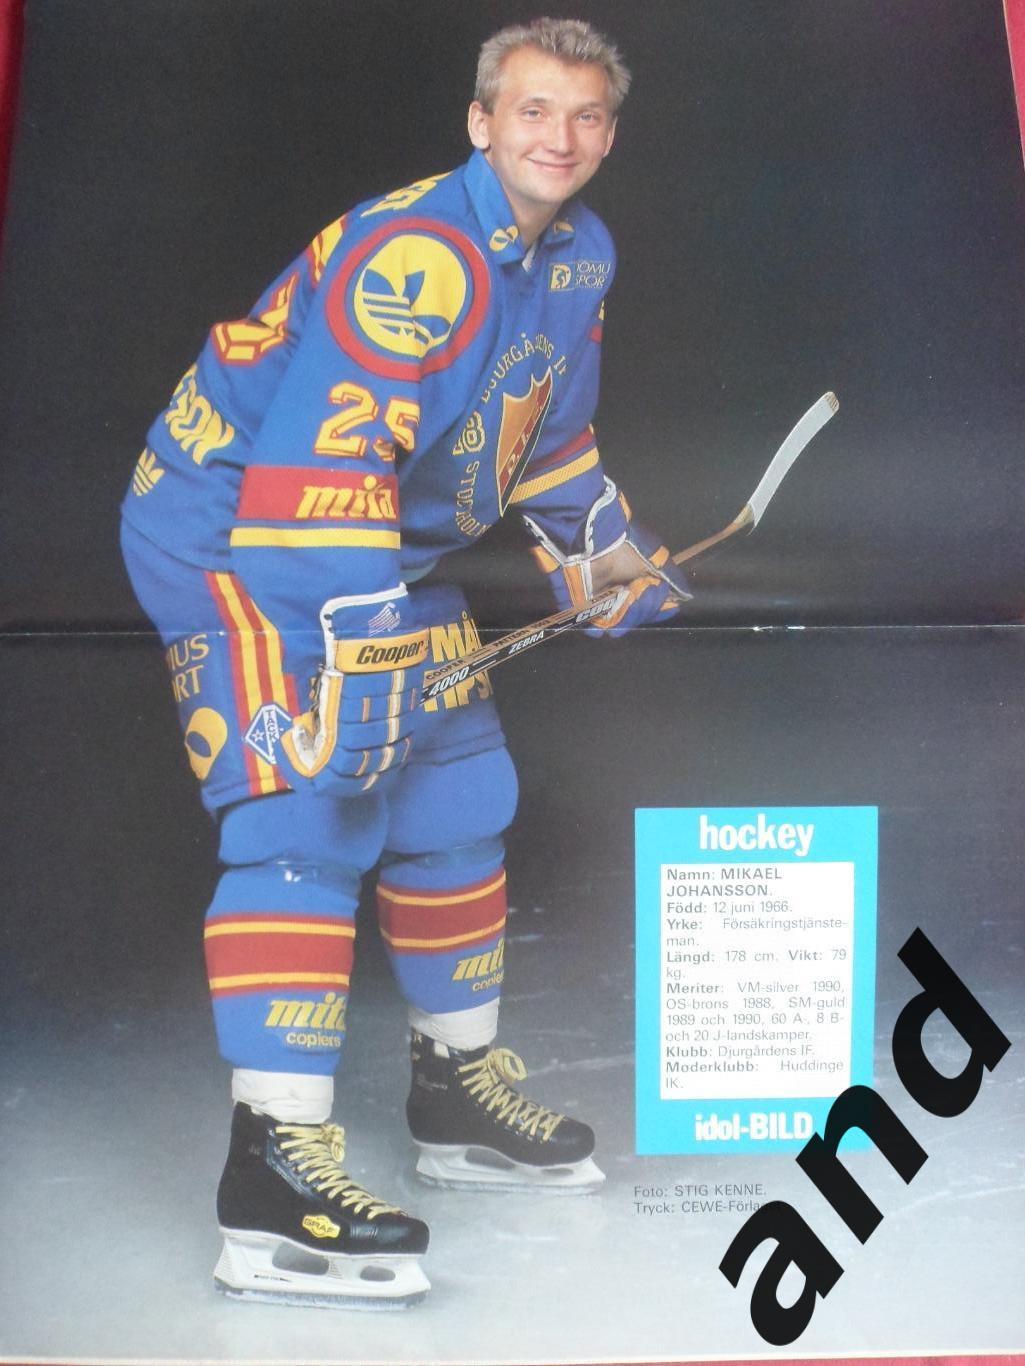 журнал Хоккей (Швеция) № 8 (1990) постеры всех команд Элитсерии 1